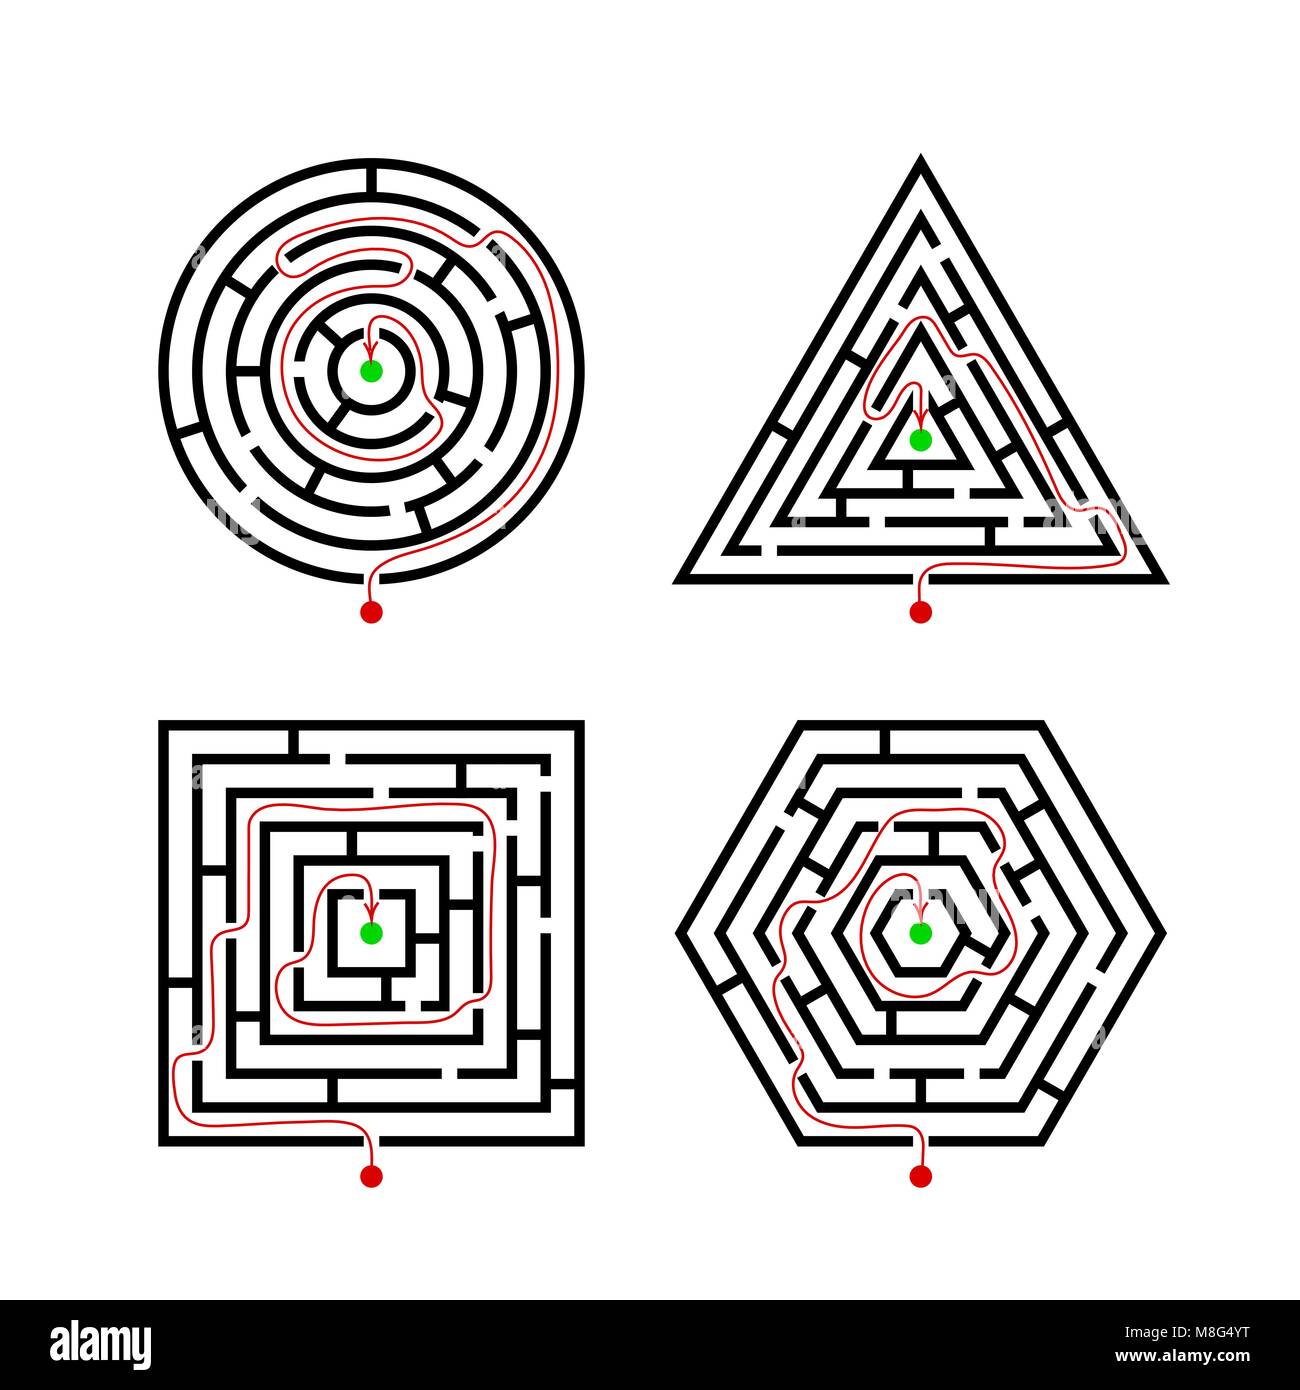 Satz von Labyrinth unterschiedliche Formen für Spiel mit mit dem Marker richtige Route. Labyrinth quadratisch, rund, sechskant und Dreieck Puzzle Rätsel Logik Spiel conce Stock Vektor